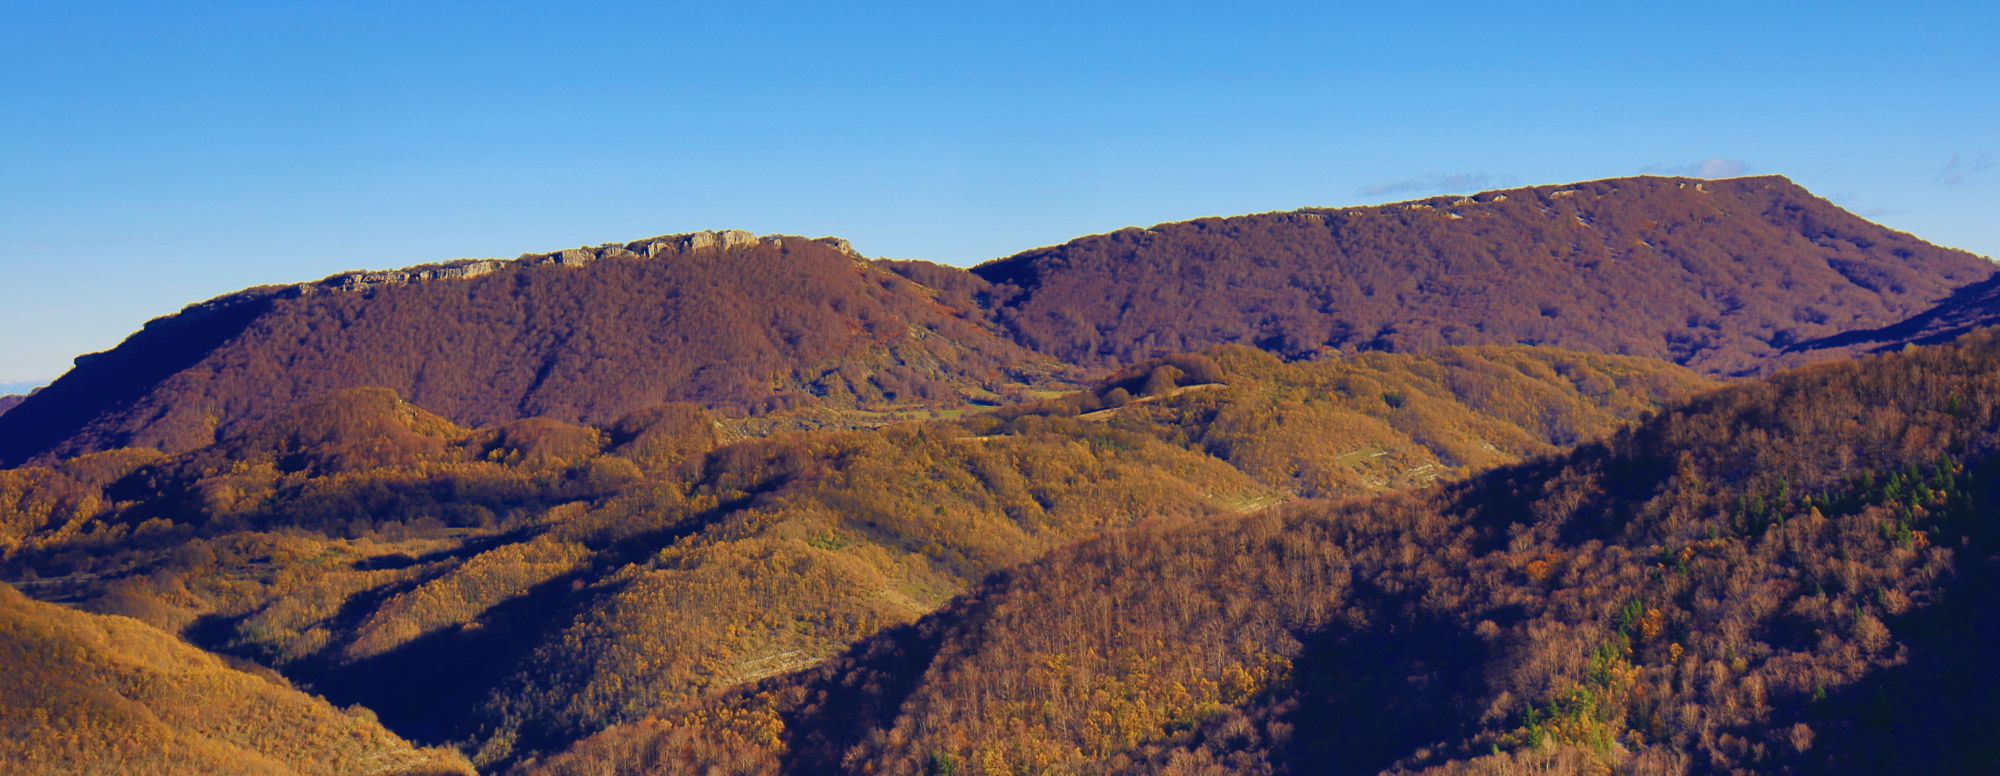 Φυσική γεωγραφία της Καστοριάς: Τα Μικρά (αριστερά) και τα Μεγάλα (δεξιά) Όντρια από το χωριό Κοτύλη